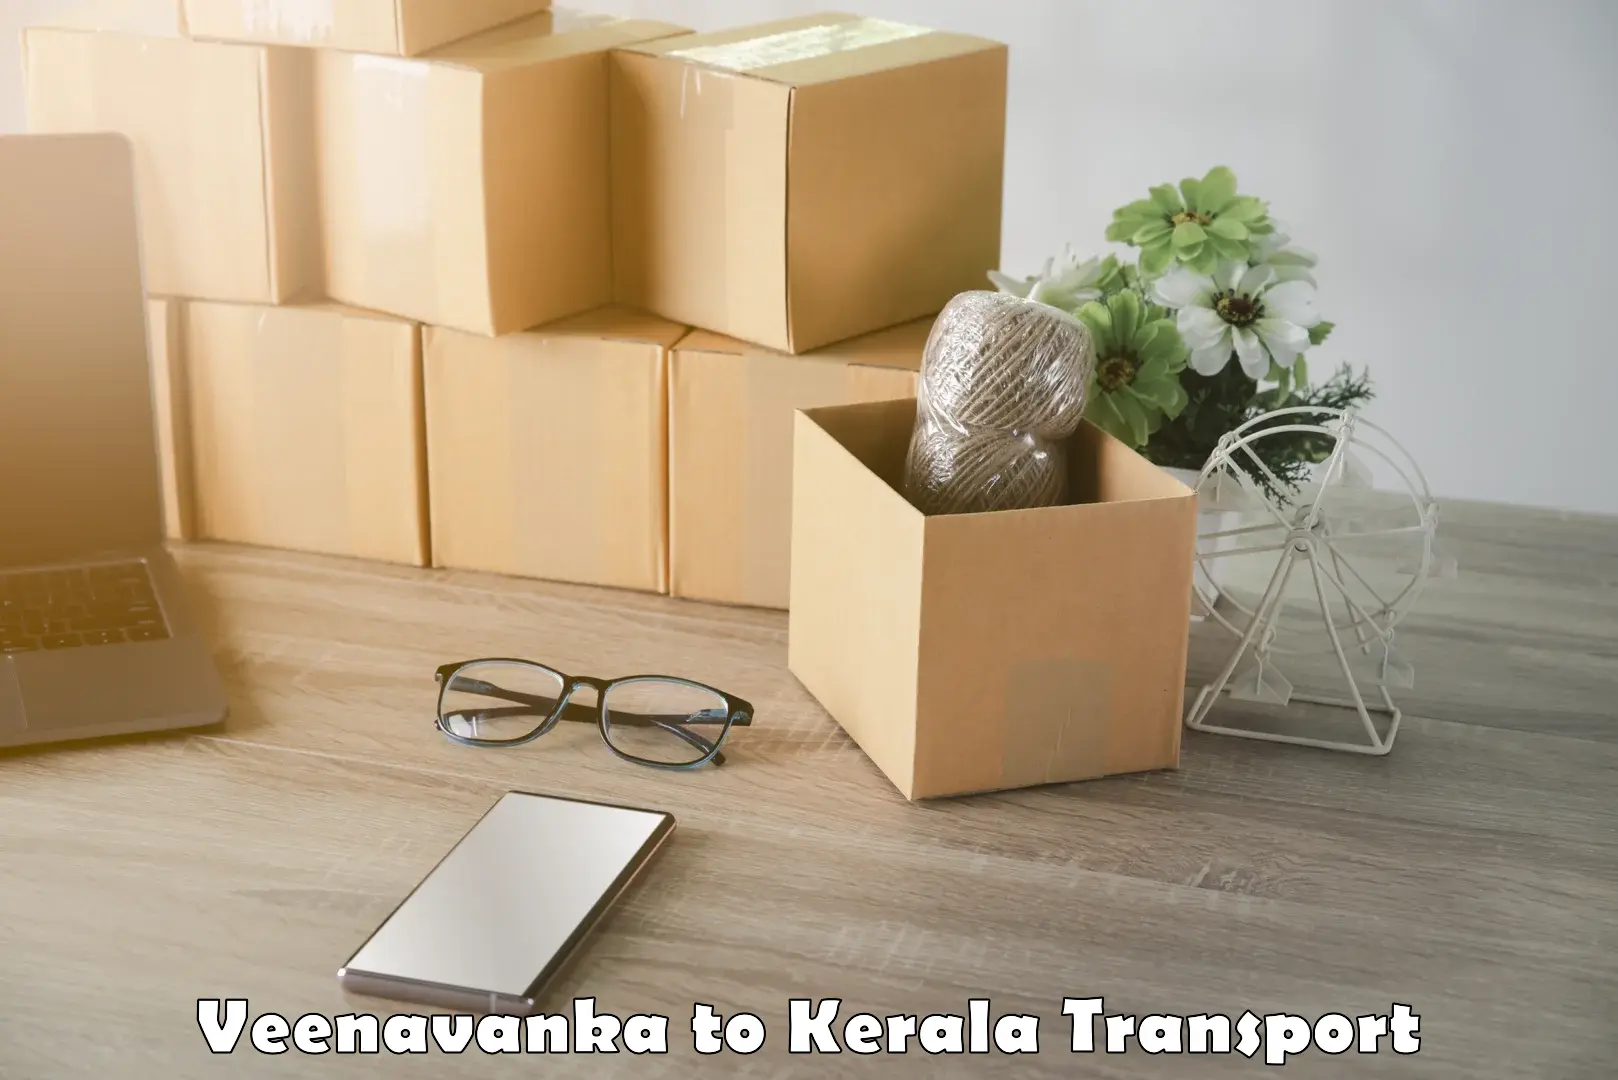 Nearby transport service Veenavanka to Kalpetta